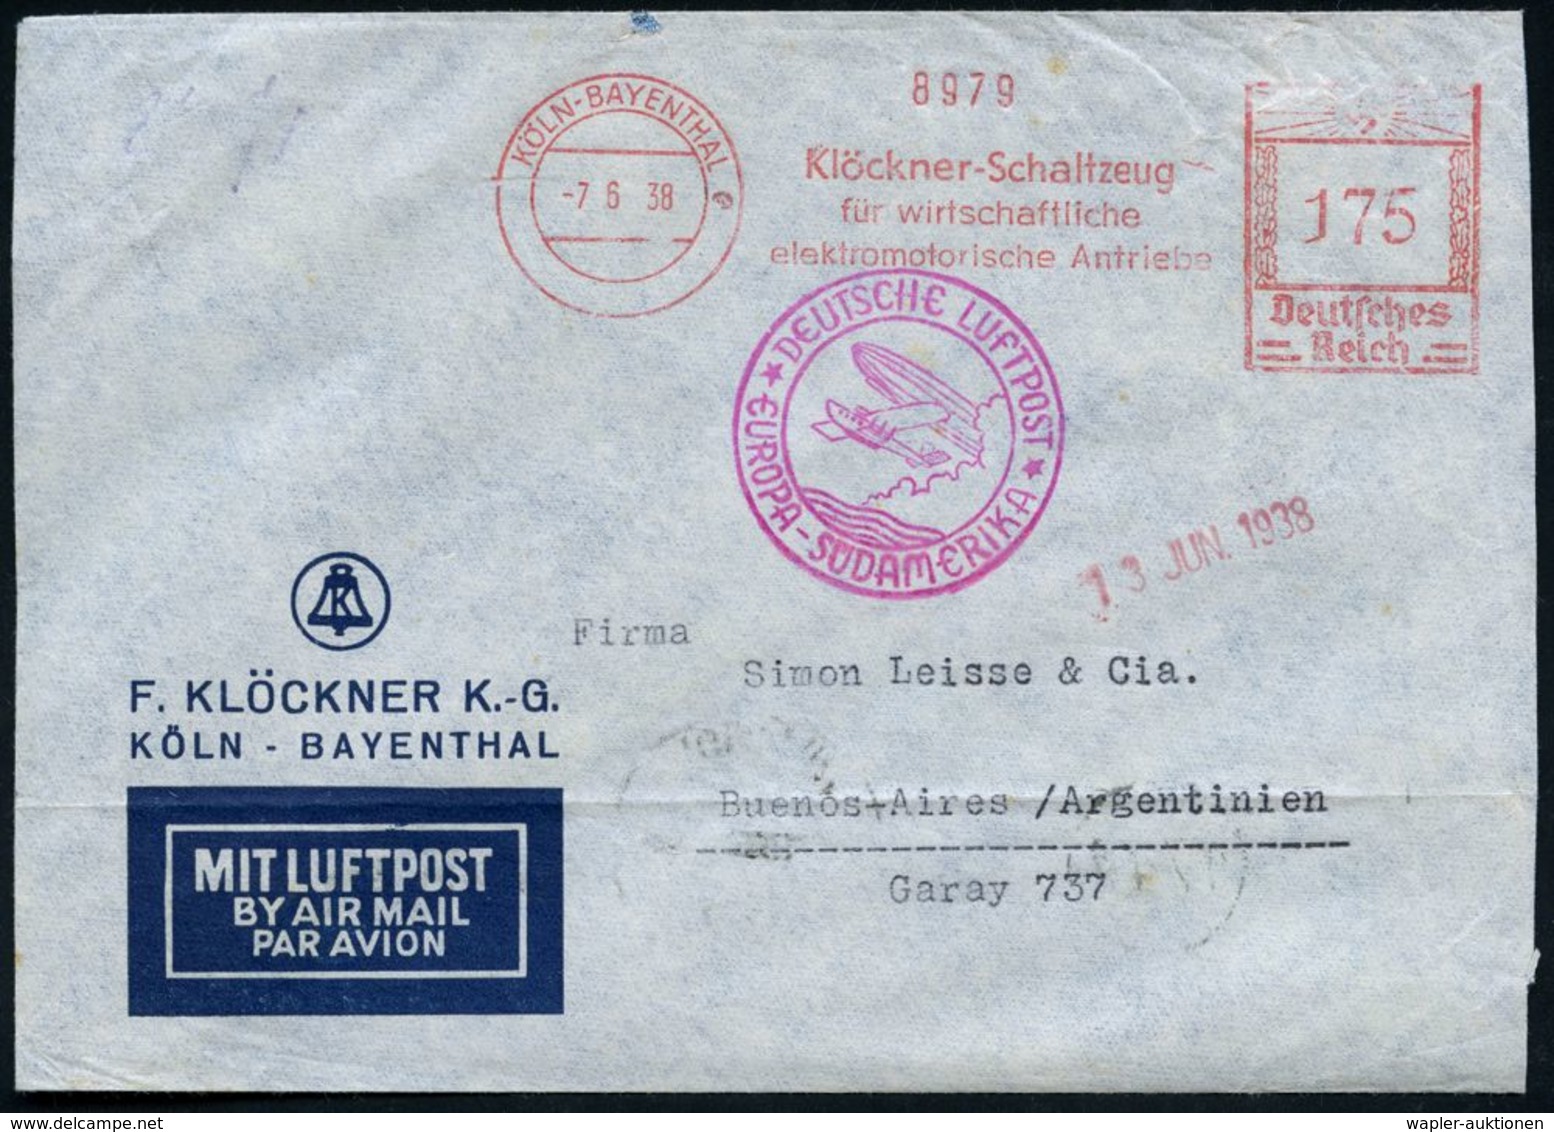 KÖLN-BAYENTHAL/ Klöckner-Schaltzeug.. 1938 (7.6.) AFS 175 Pf. + Lila Katapult-HdN:*DEUTSCHE LUFTPOST*/ EUROPA-SÜDAMERIKA - Altri (Aria)